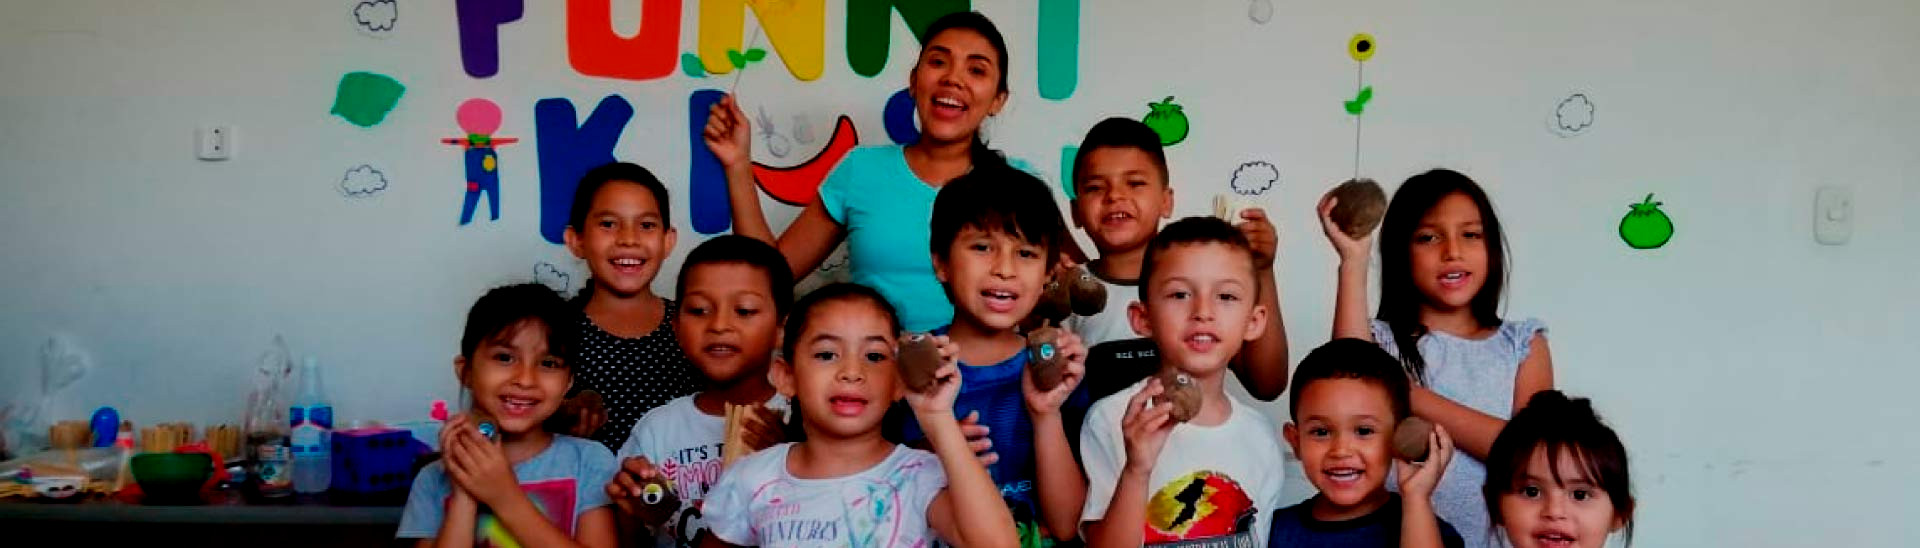 Kendry Olivares y los niños que participan en su emprendimiento, Funny Kids.